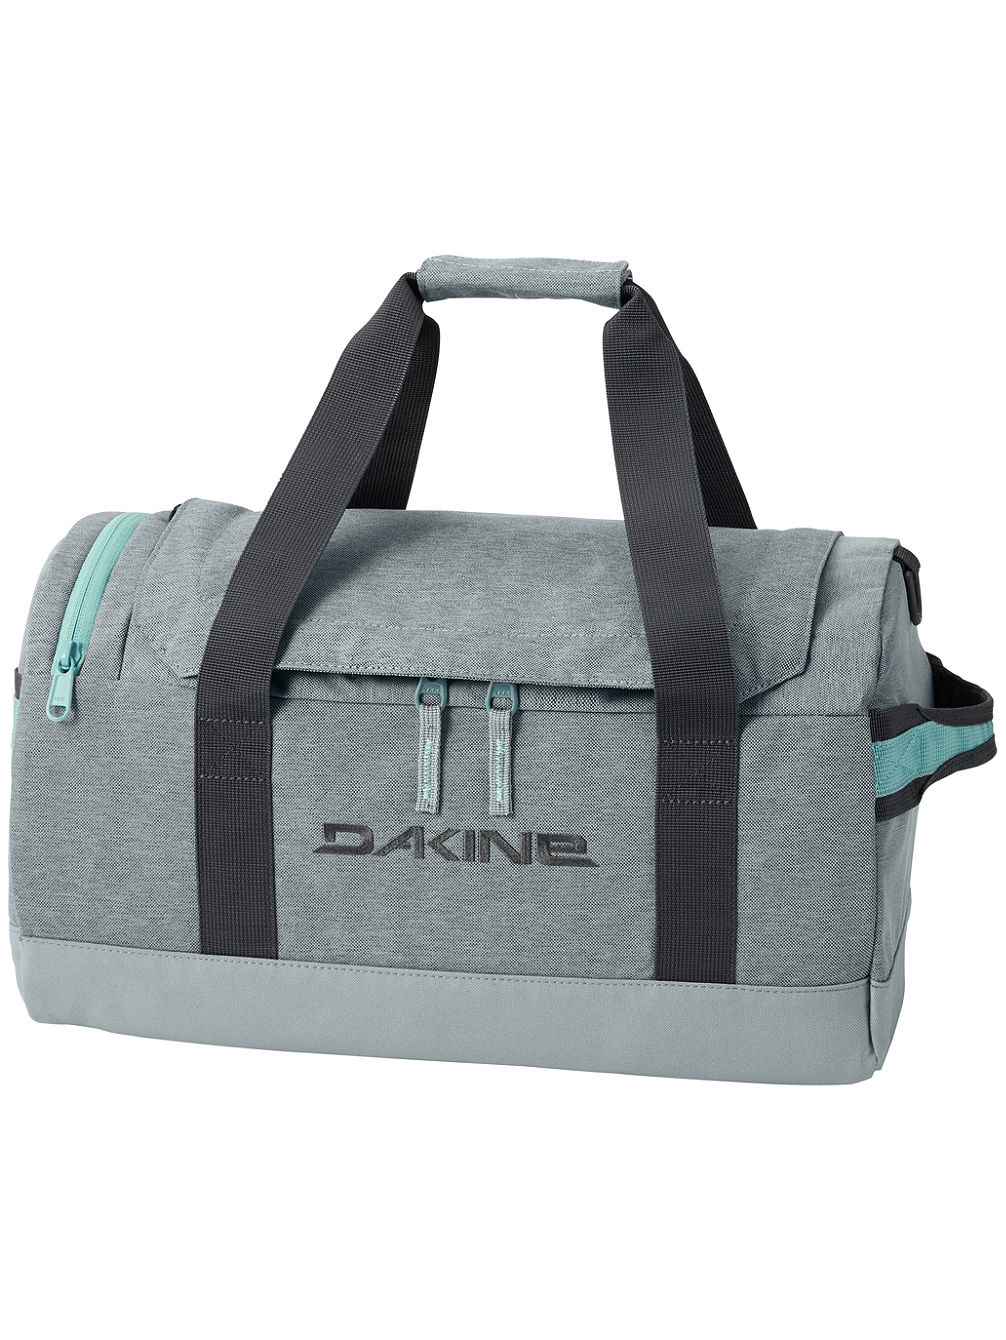 EQ Duffle 25L Travel Bag